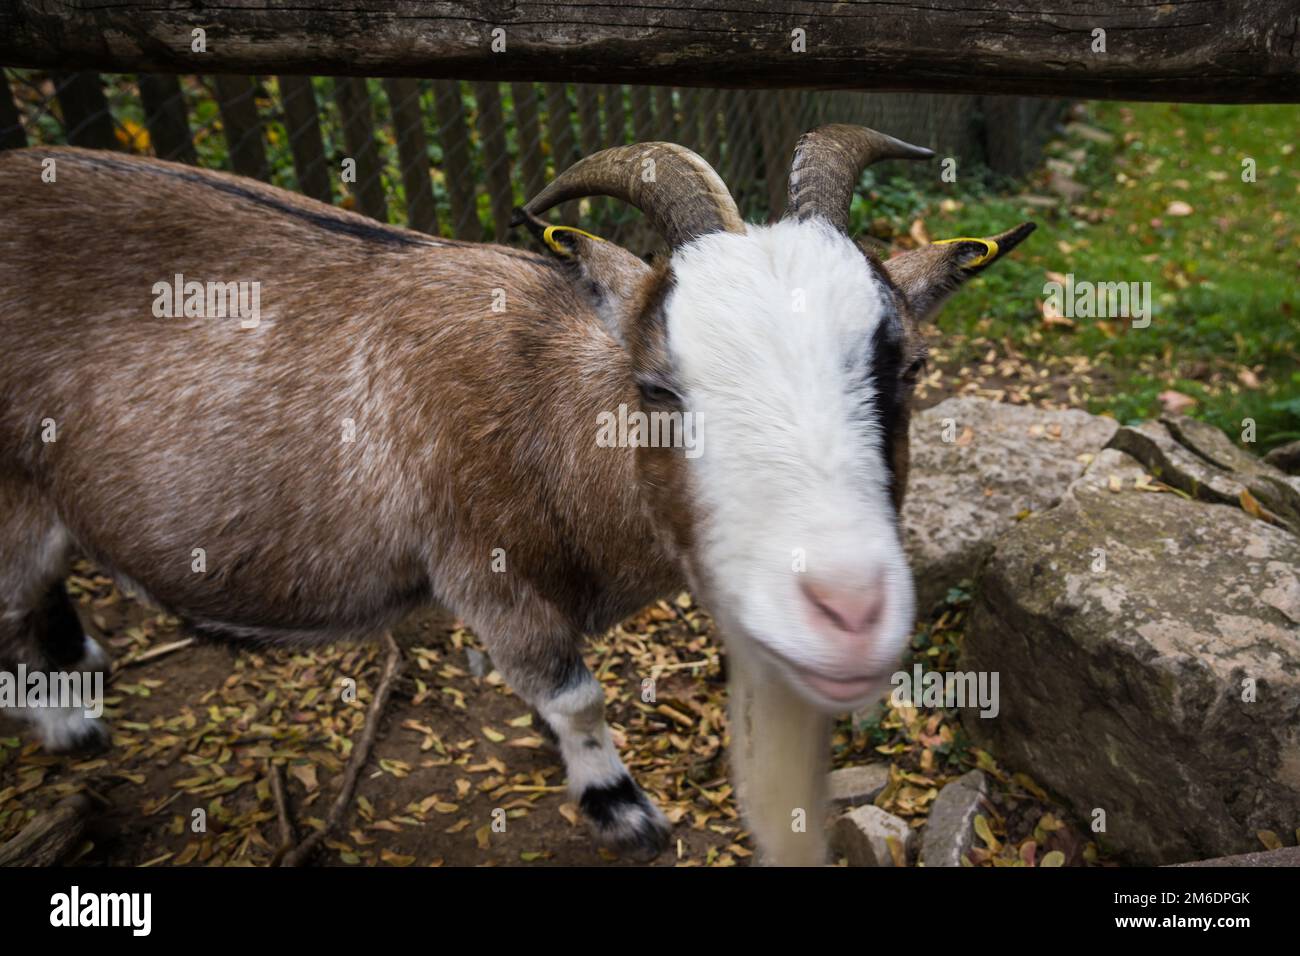 Cabra animal de granja con cara curiosa Foto de stock